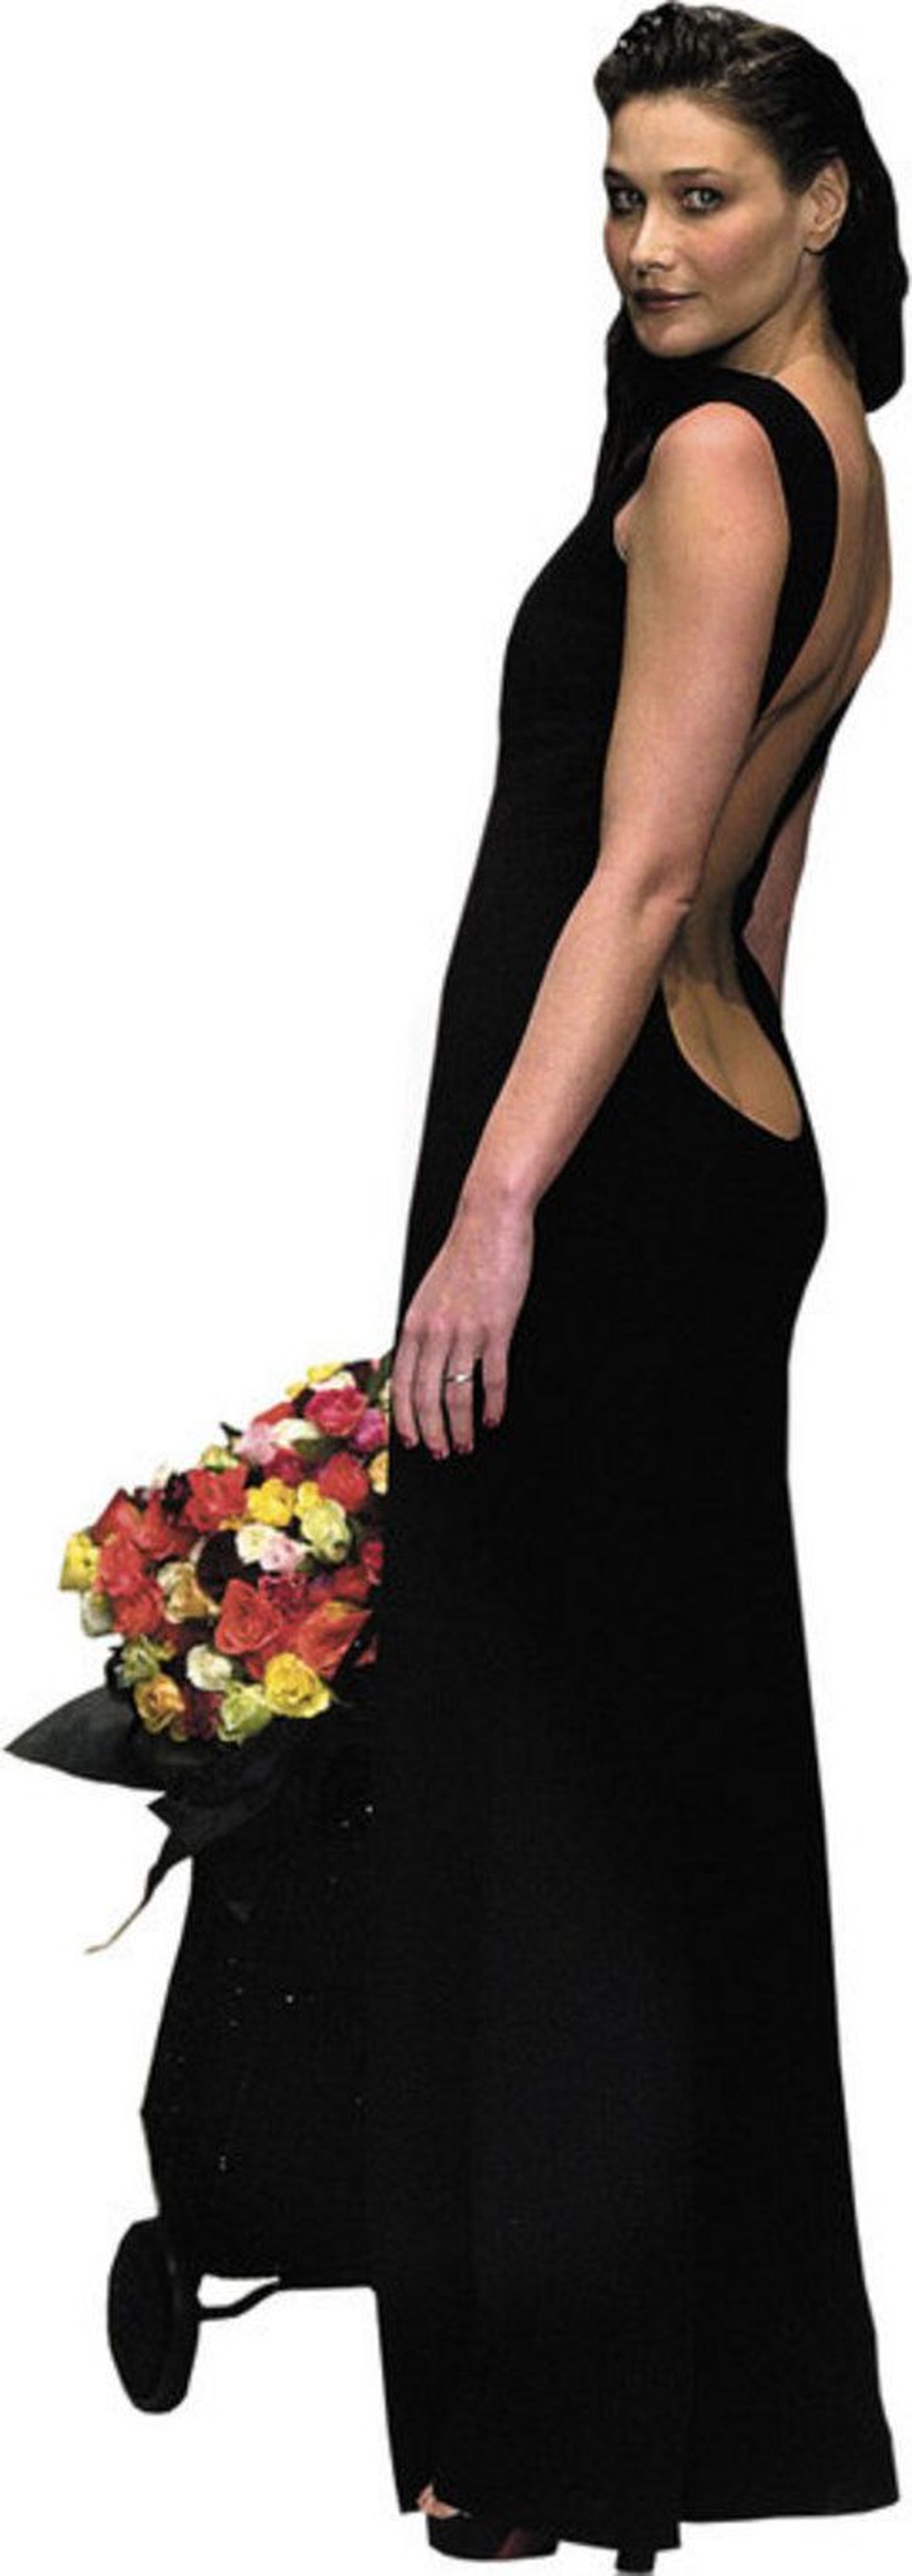 Pilkupüüdva välimusega Carla Bruni oli 1990ndatel üks maailma paremini tasustatumaid modelle.